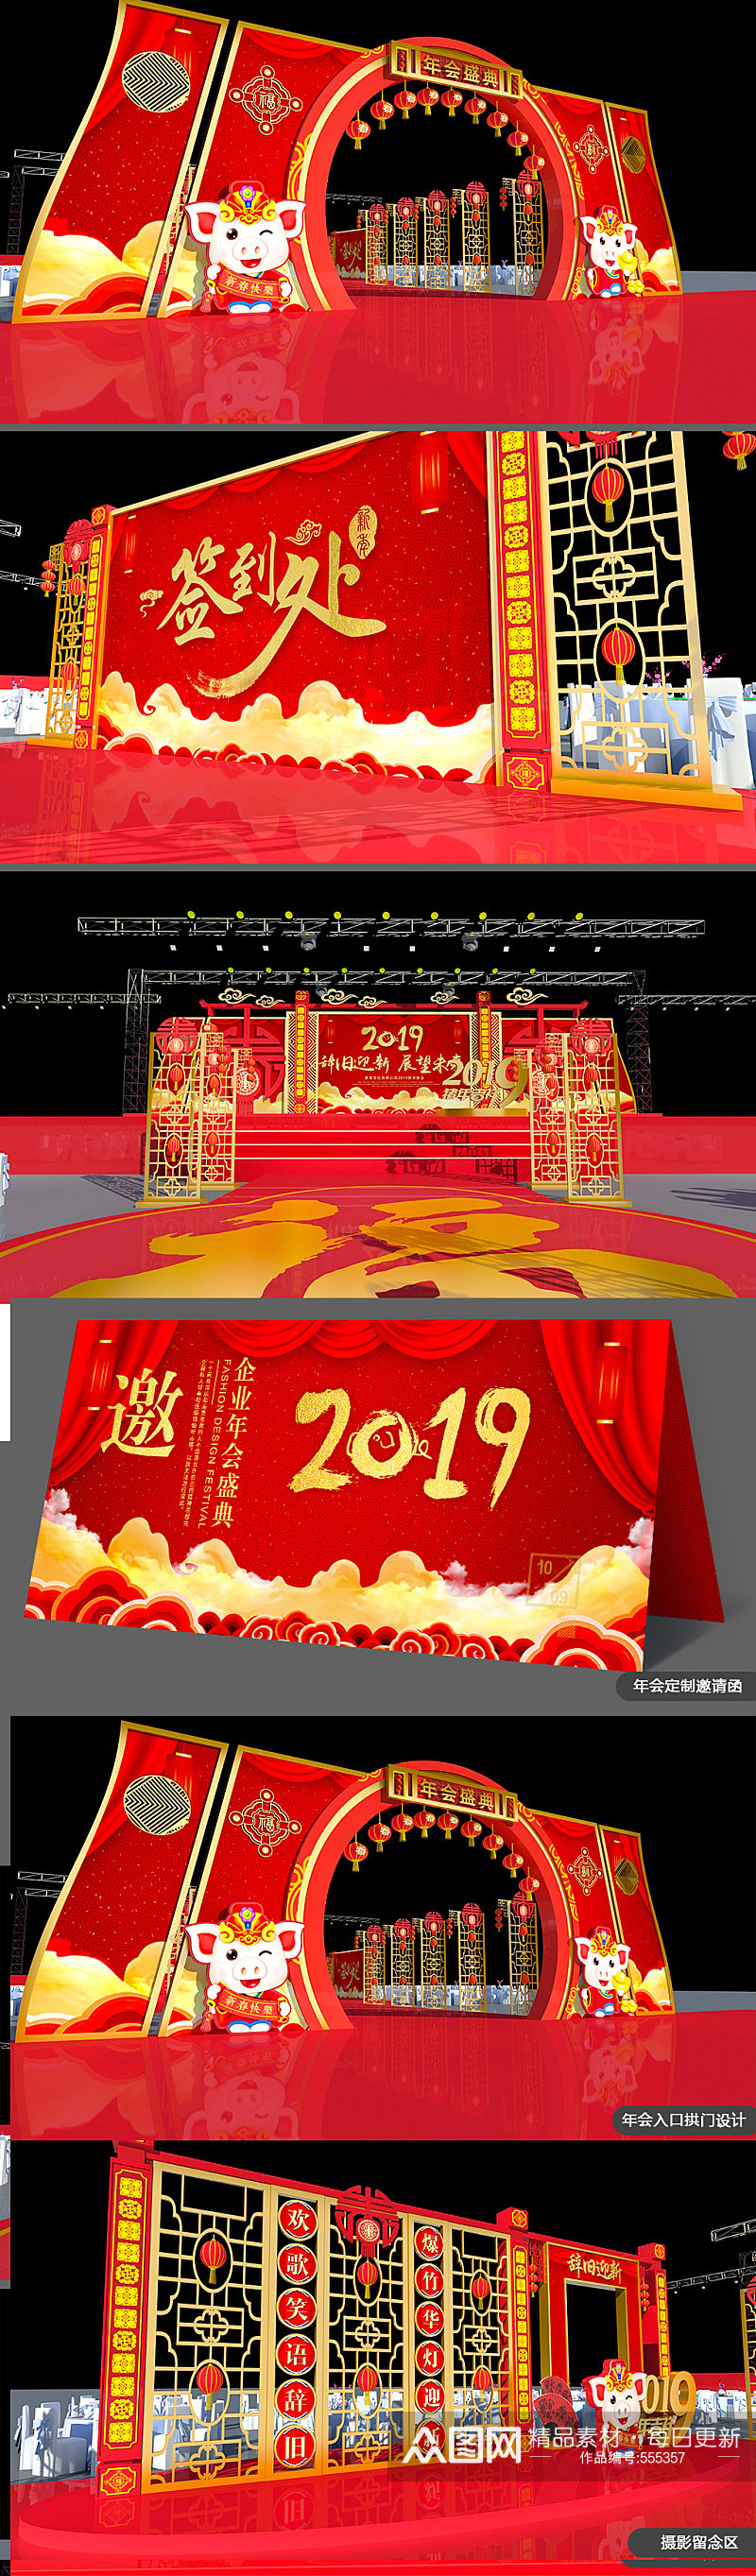 中式喜庆企业年会布置舞美舞台效果雷亚架图片设计方案 年会美陈素材